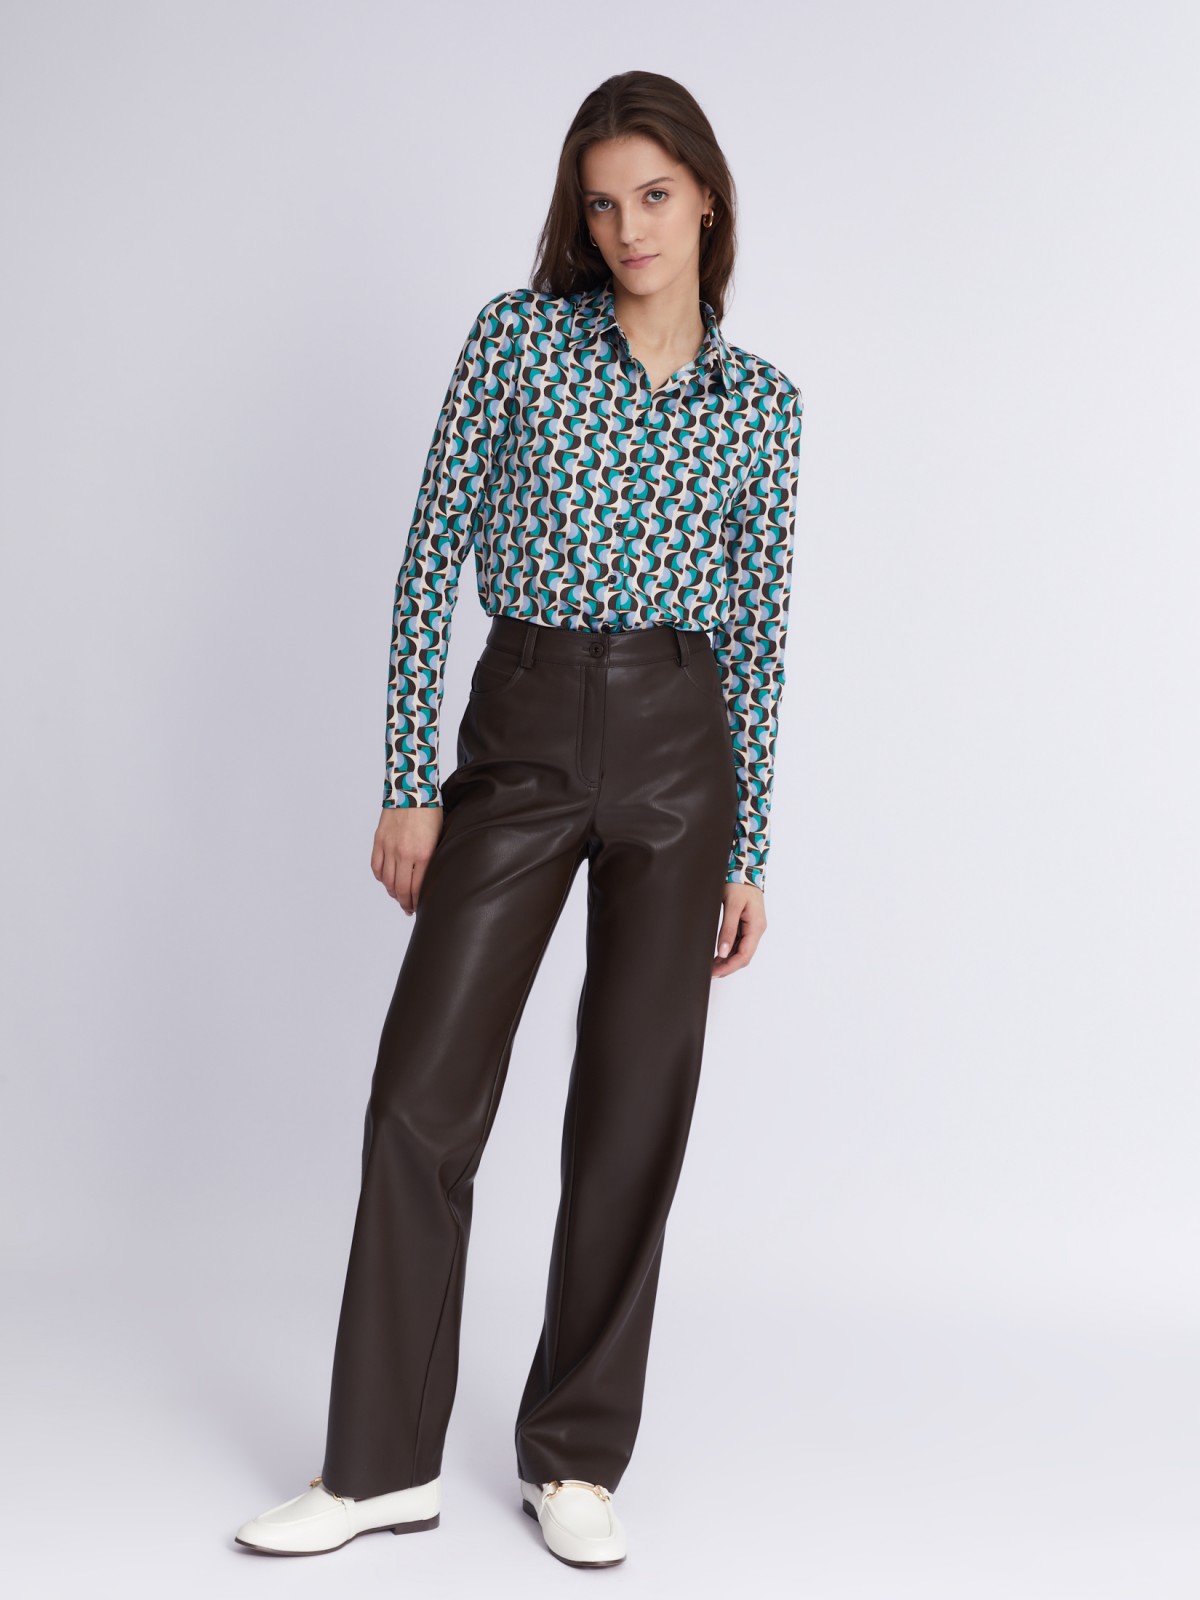 Трикотажная блузка-рубашка с абстрактным геометрическим принтом zolla 023321159233, цвет голубой, размер S - фото 2